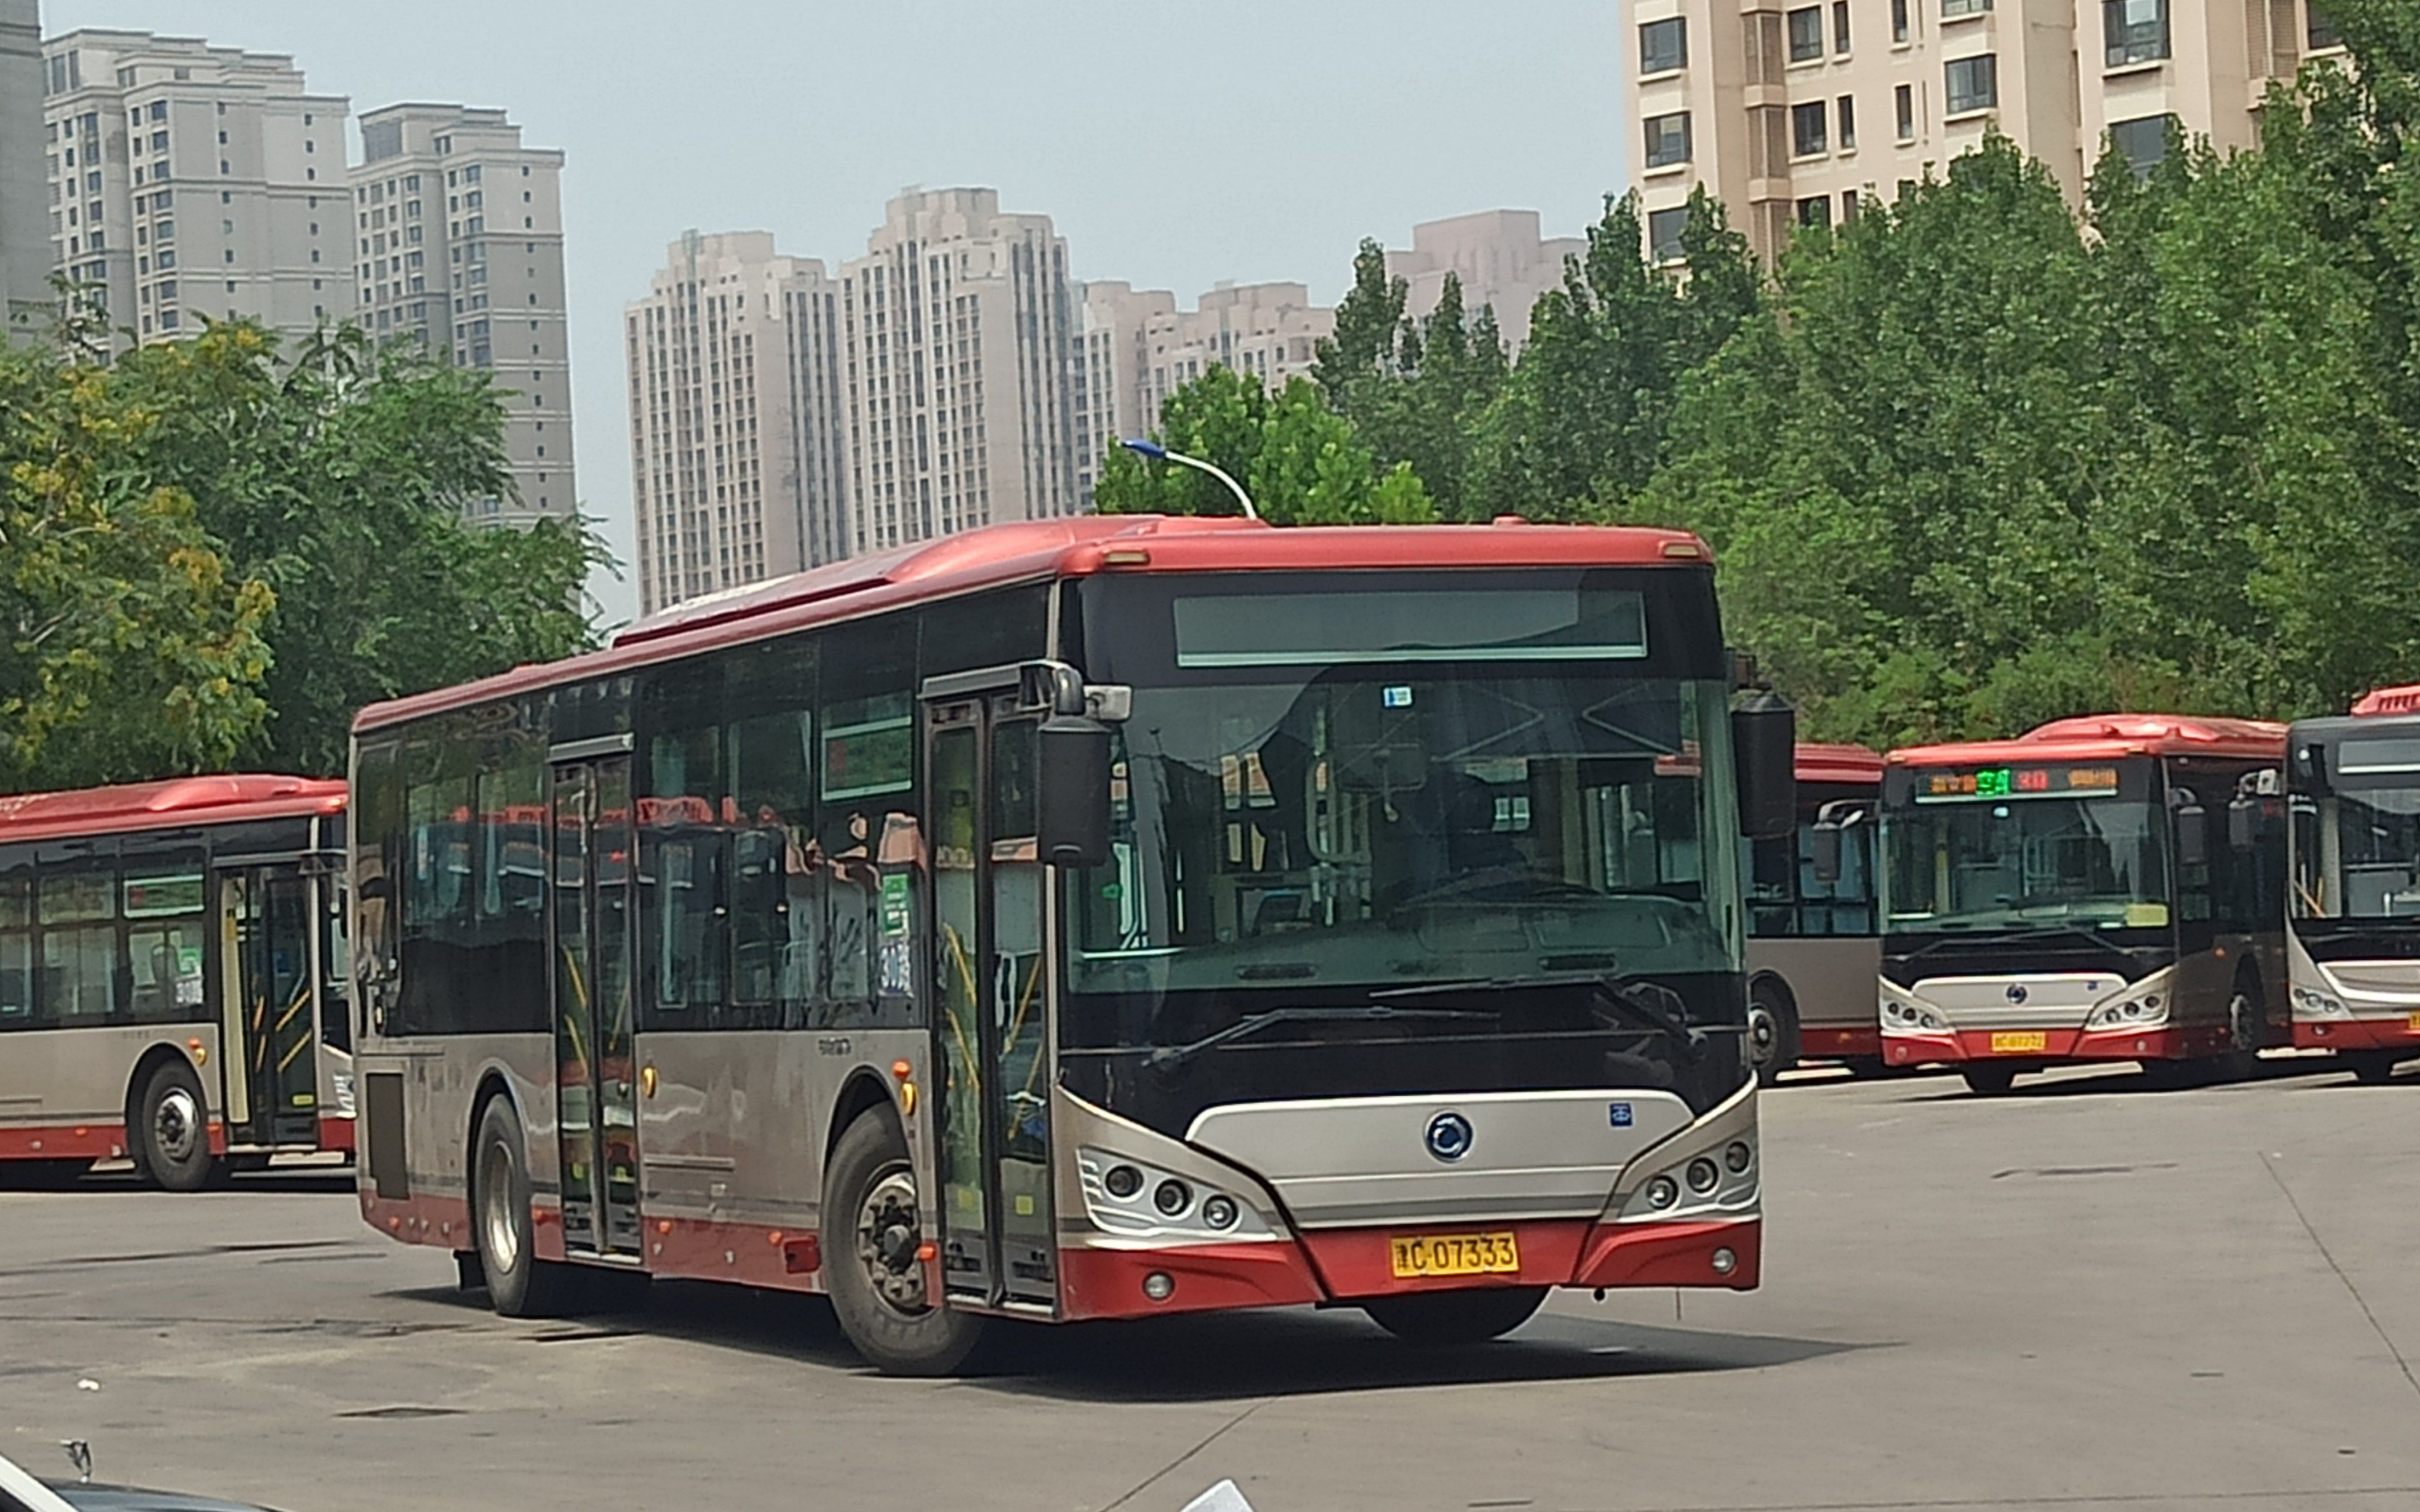 天津公交宣传制作组对各位车迷的祝福 - 哔哩哔哩